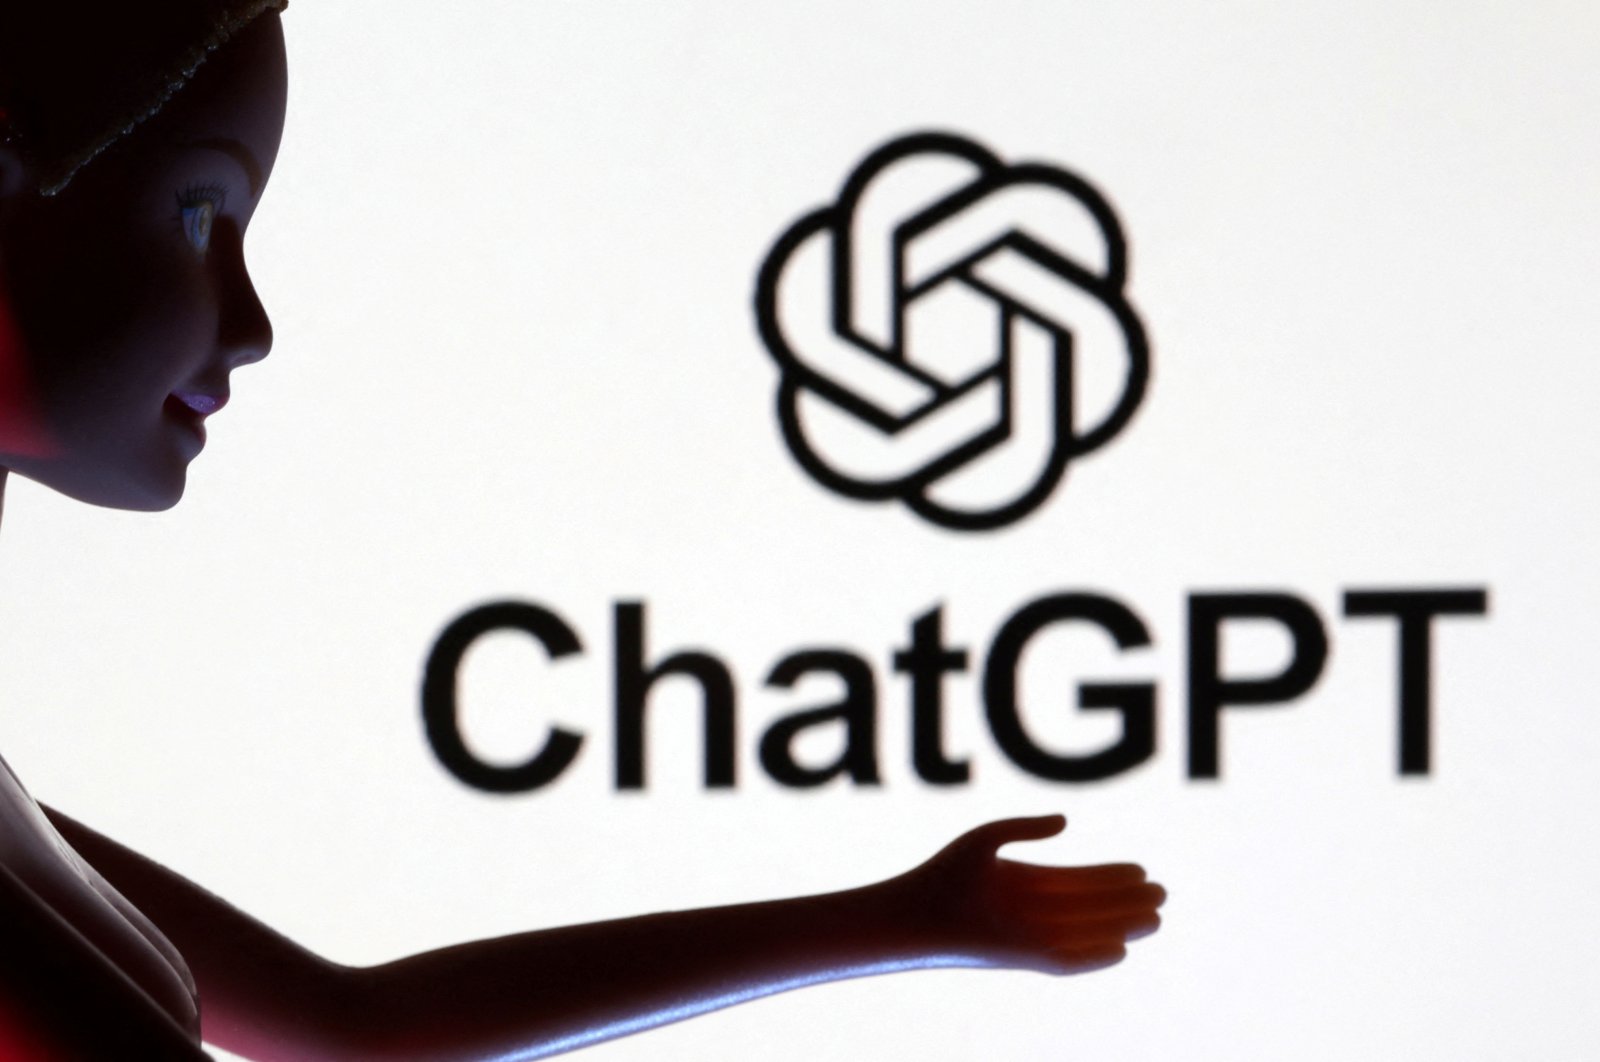 Jerman dapat memblokir ChatGPT jika diperlukan, kata kepala perlindungan data